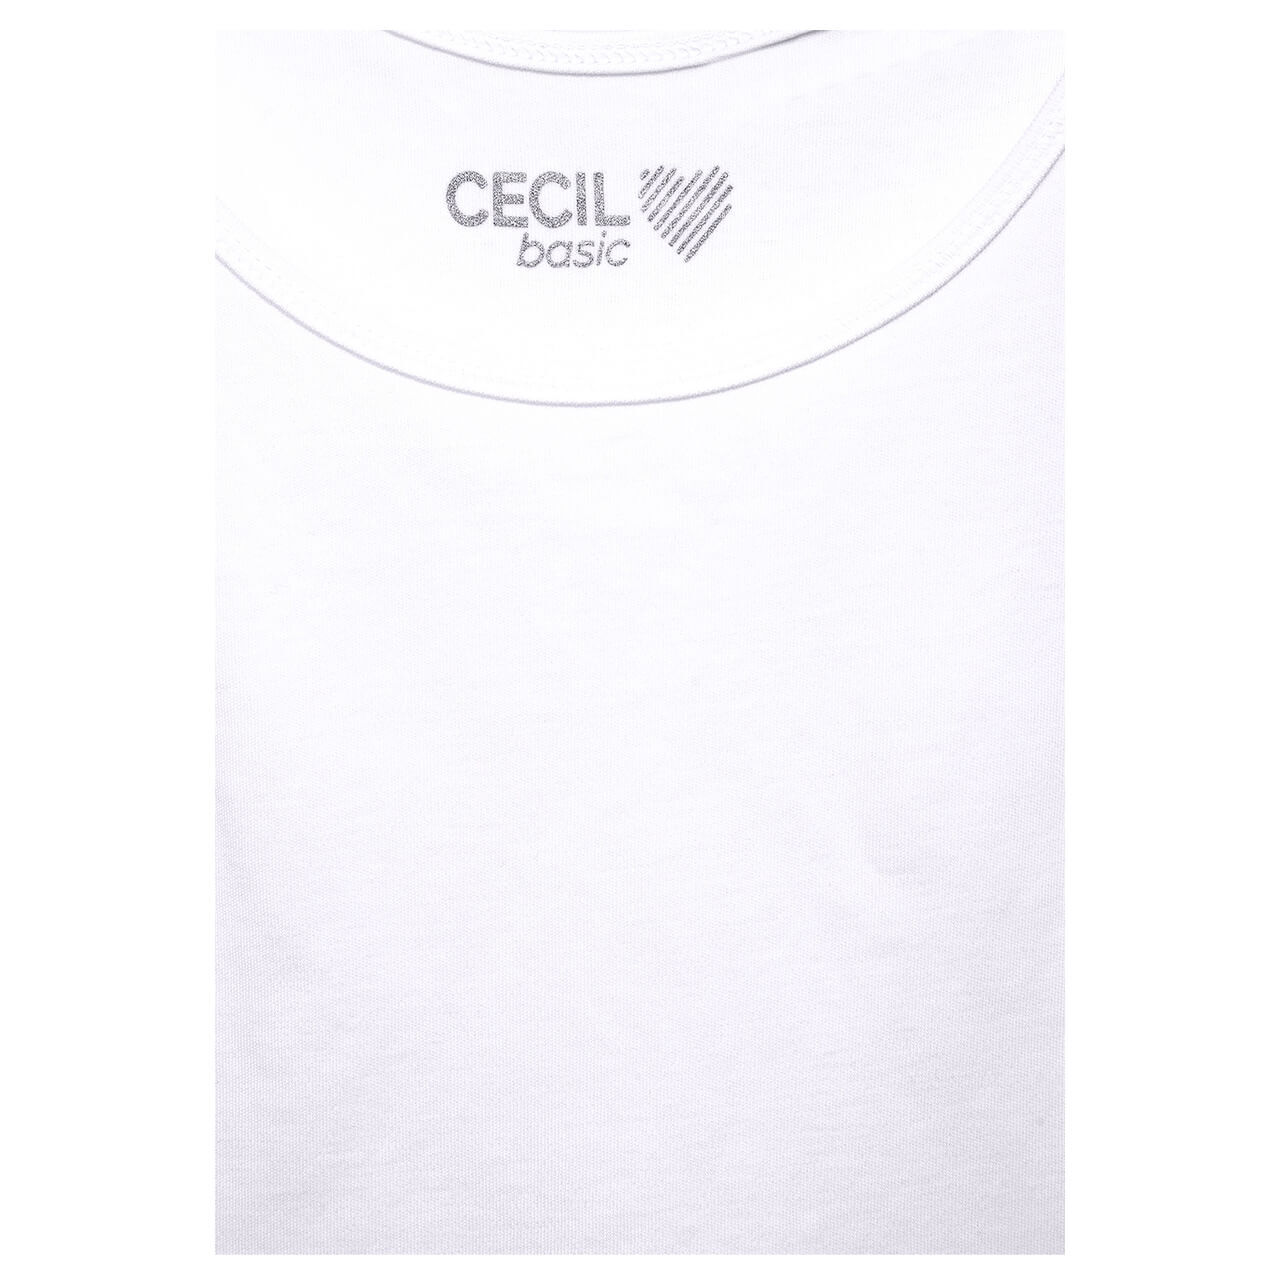 Cecil Top Linda für Damen in Weiß, FarbNr.: 1000